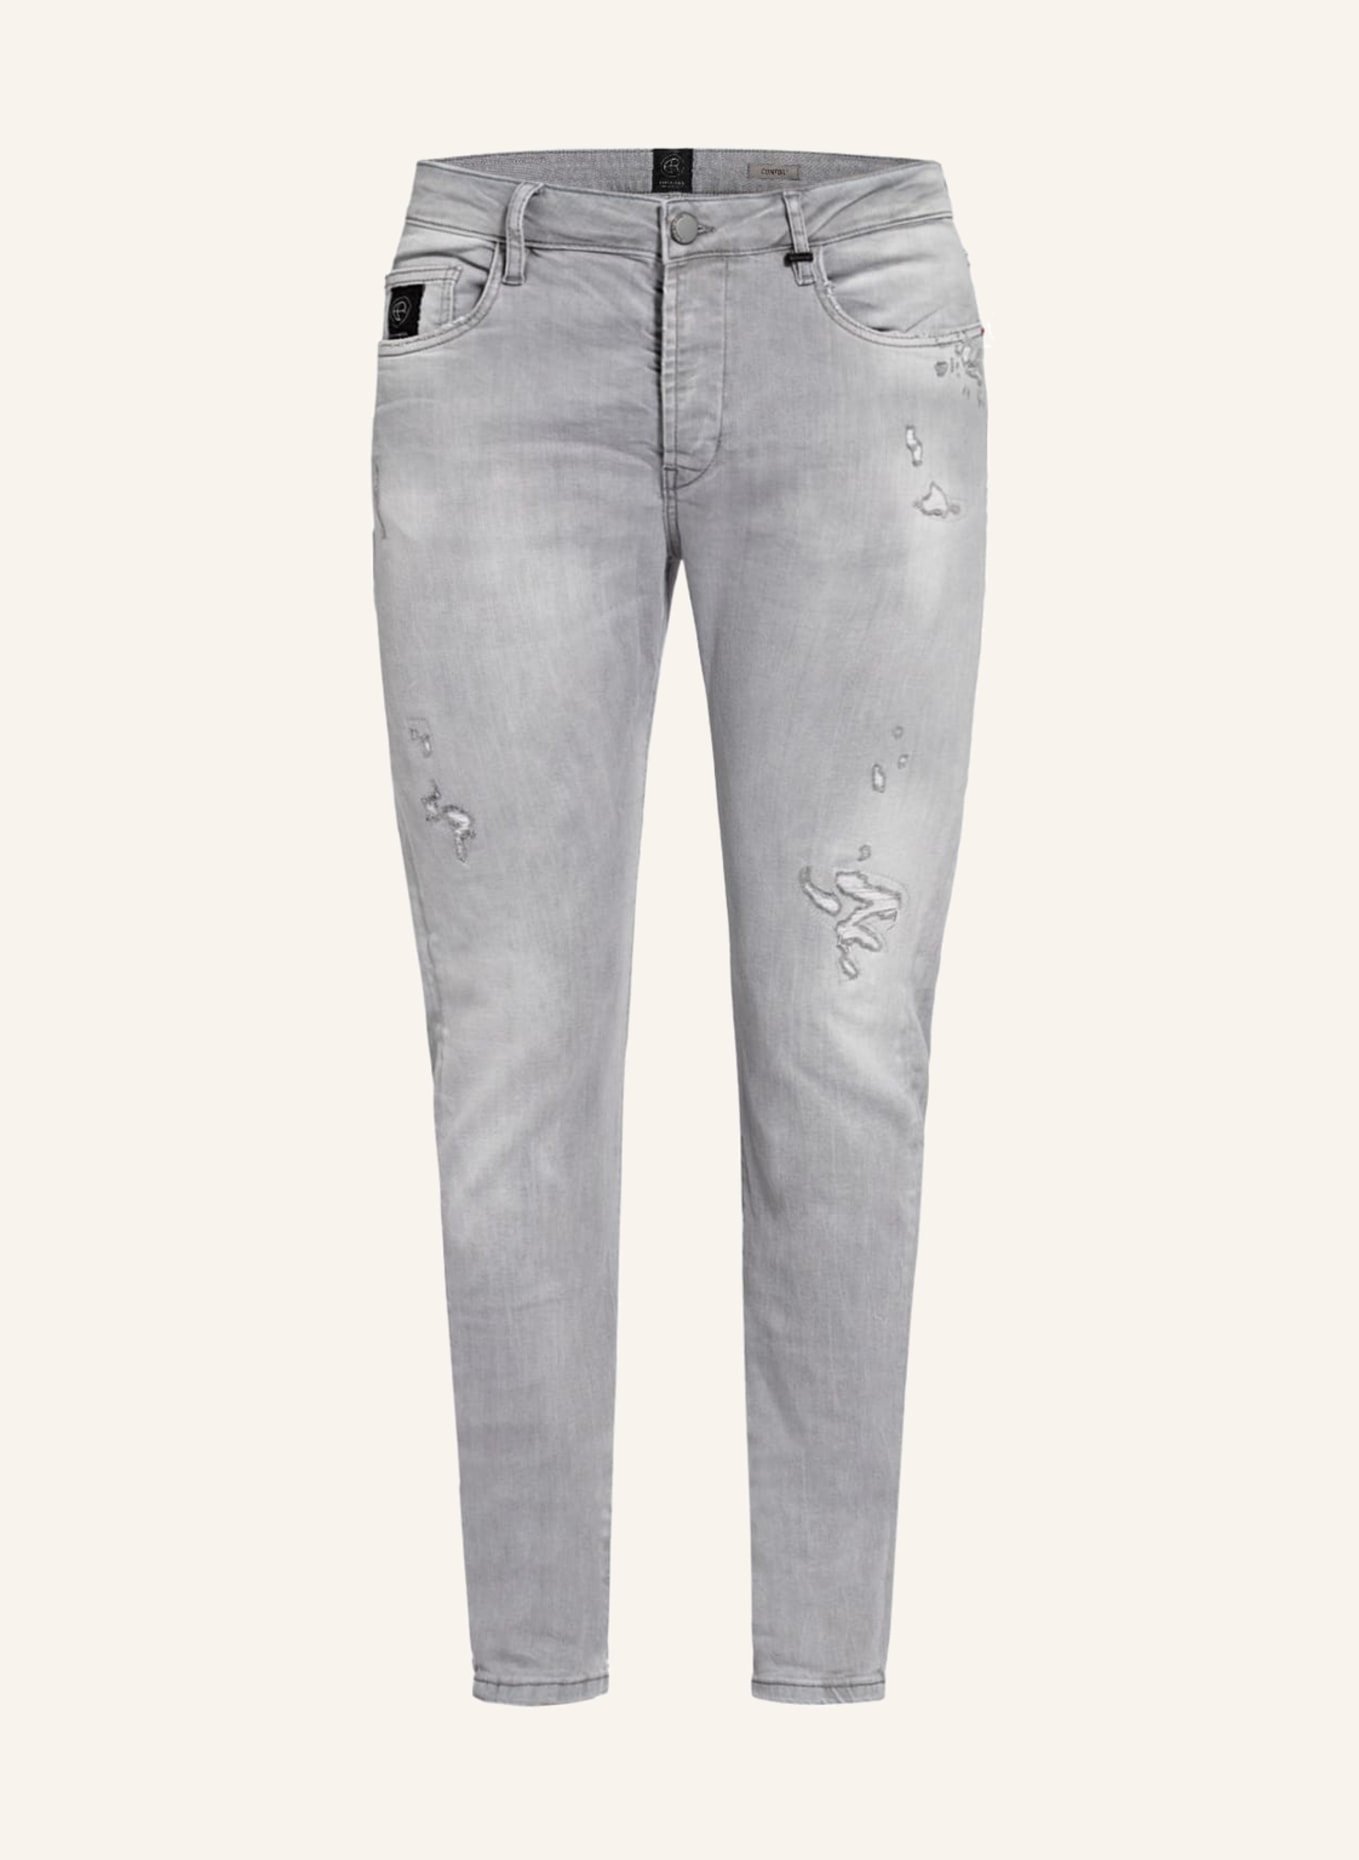 ELIAS RUMELIS Destroyed Jeans ERNOEL Comfort Fit, Farbe: 559 flint grey (Bild 1)